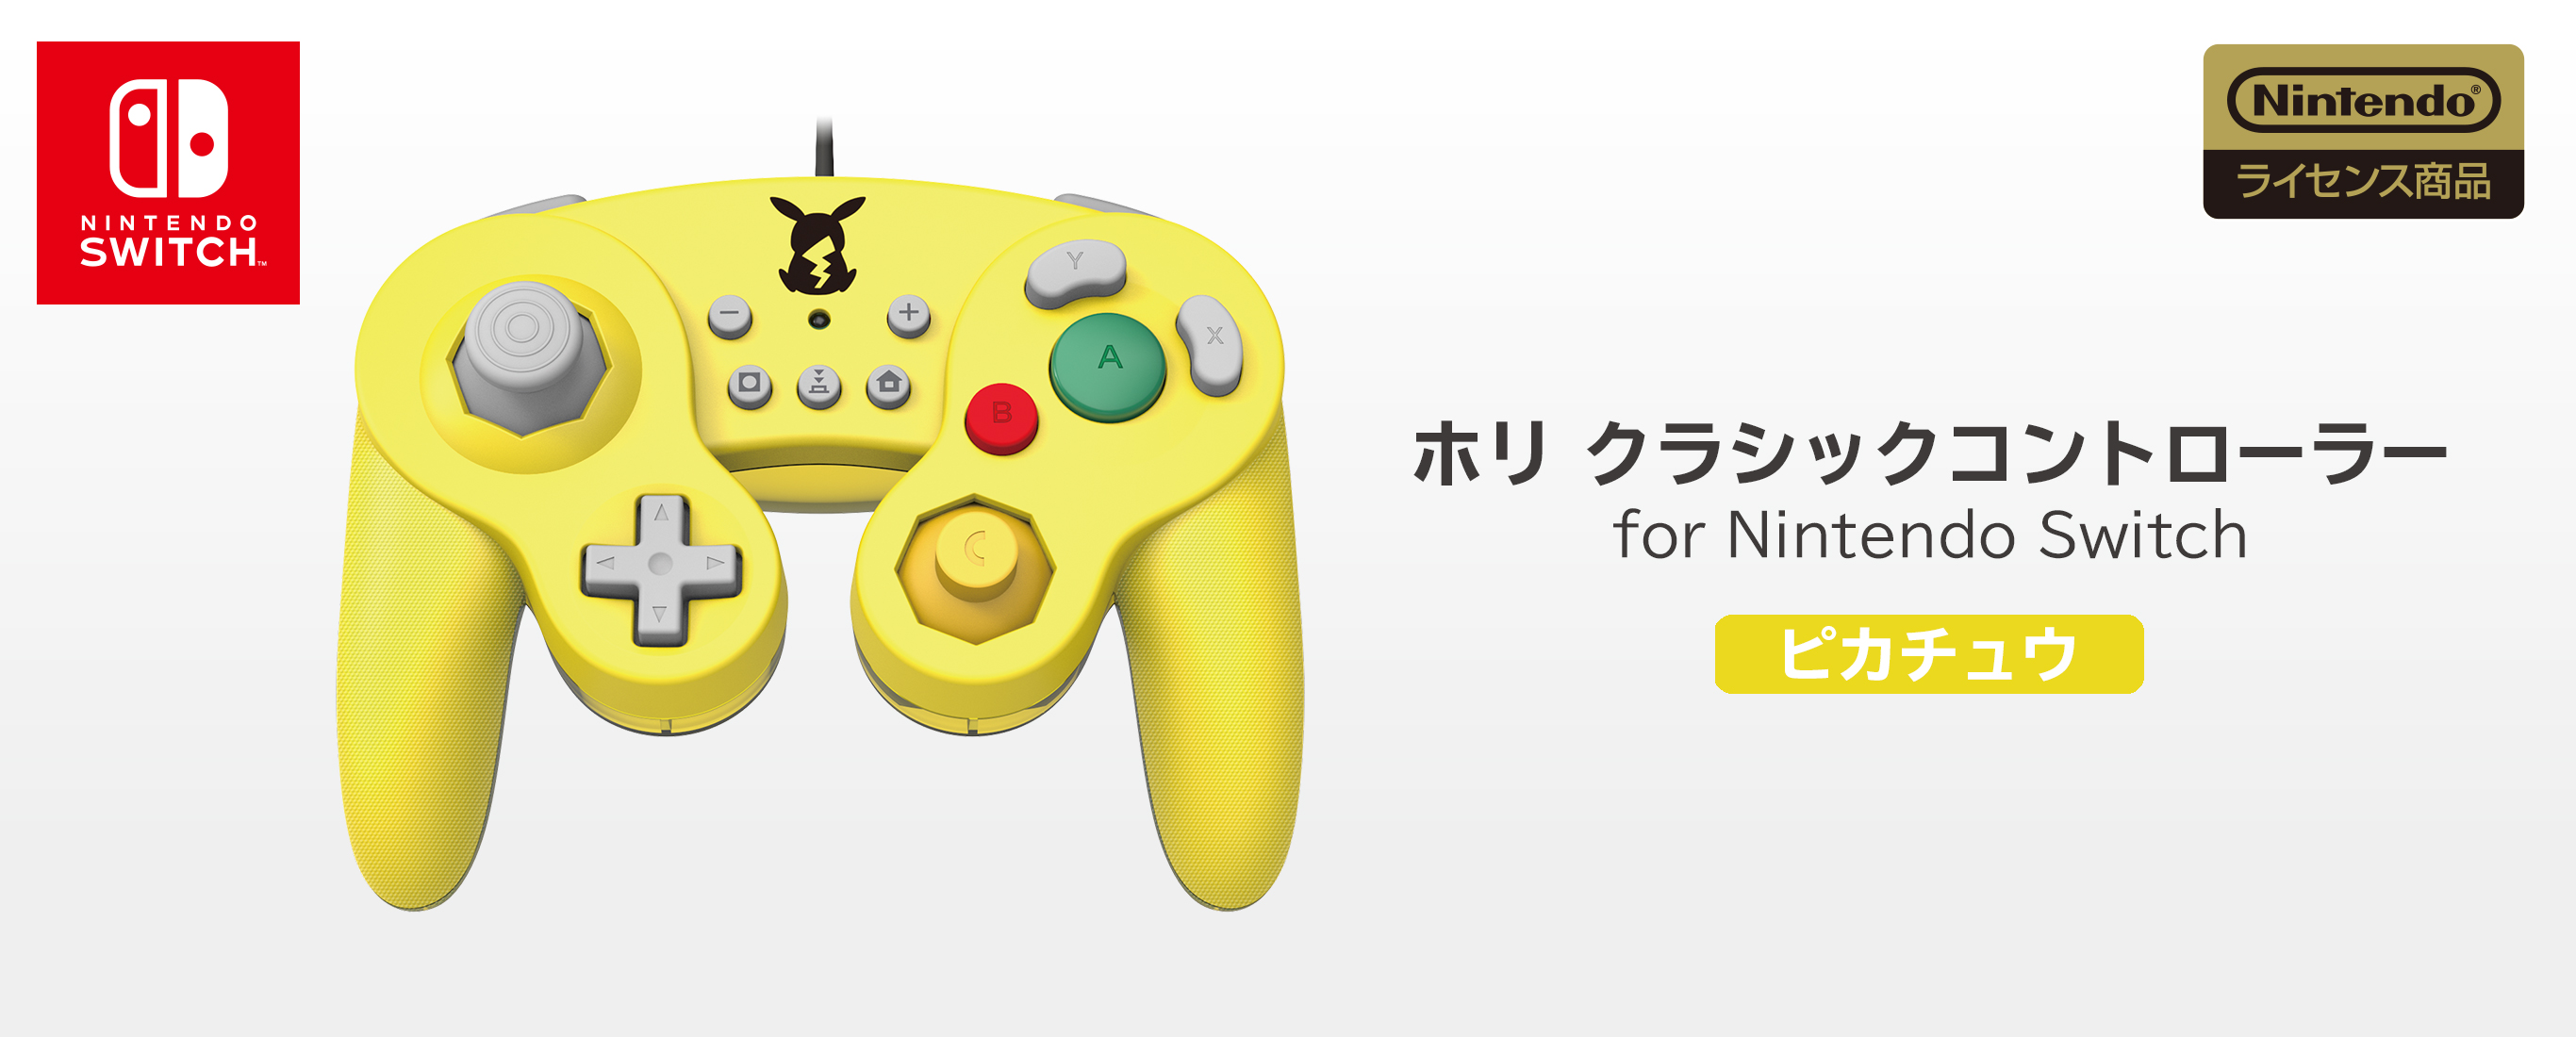 株式会社 Hori ホリ クラシックコントローラー For Nintendo Switch ピカチュウ